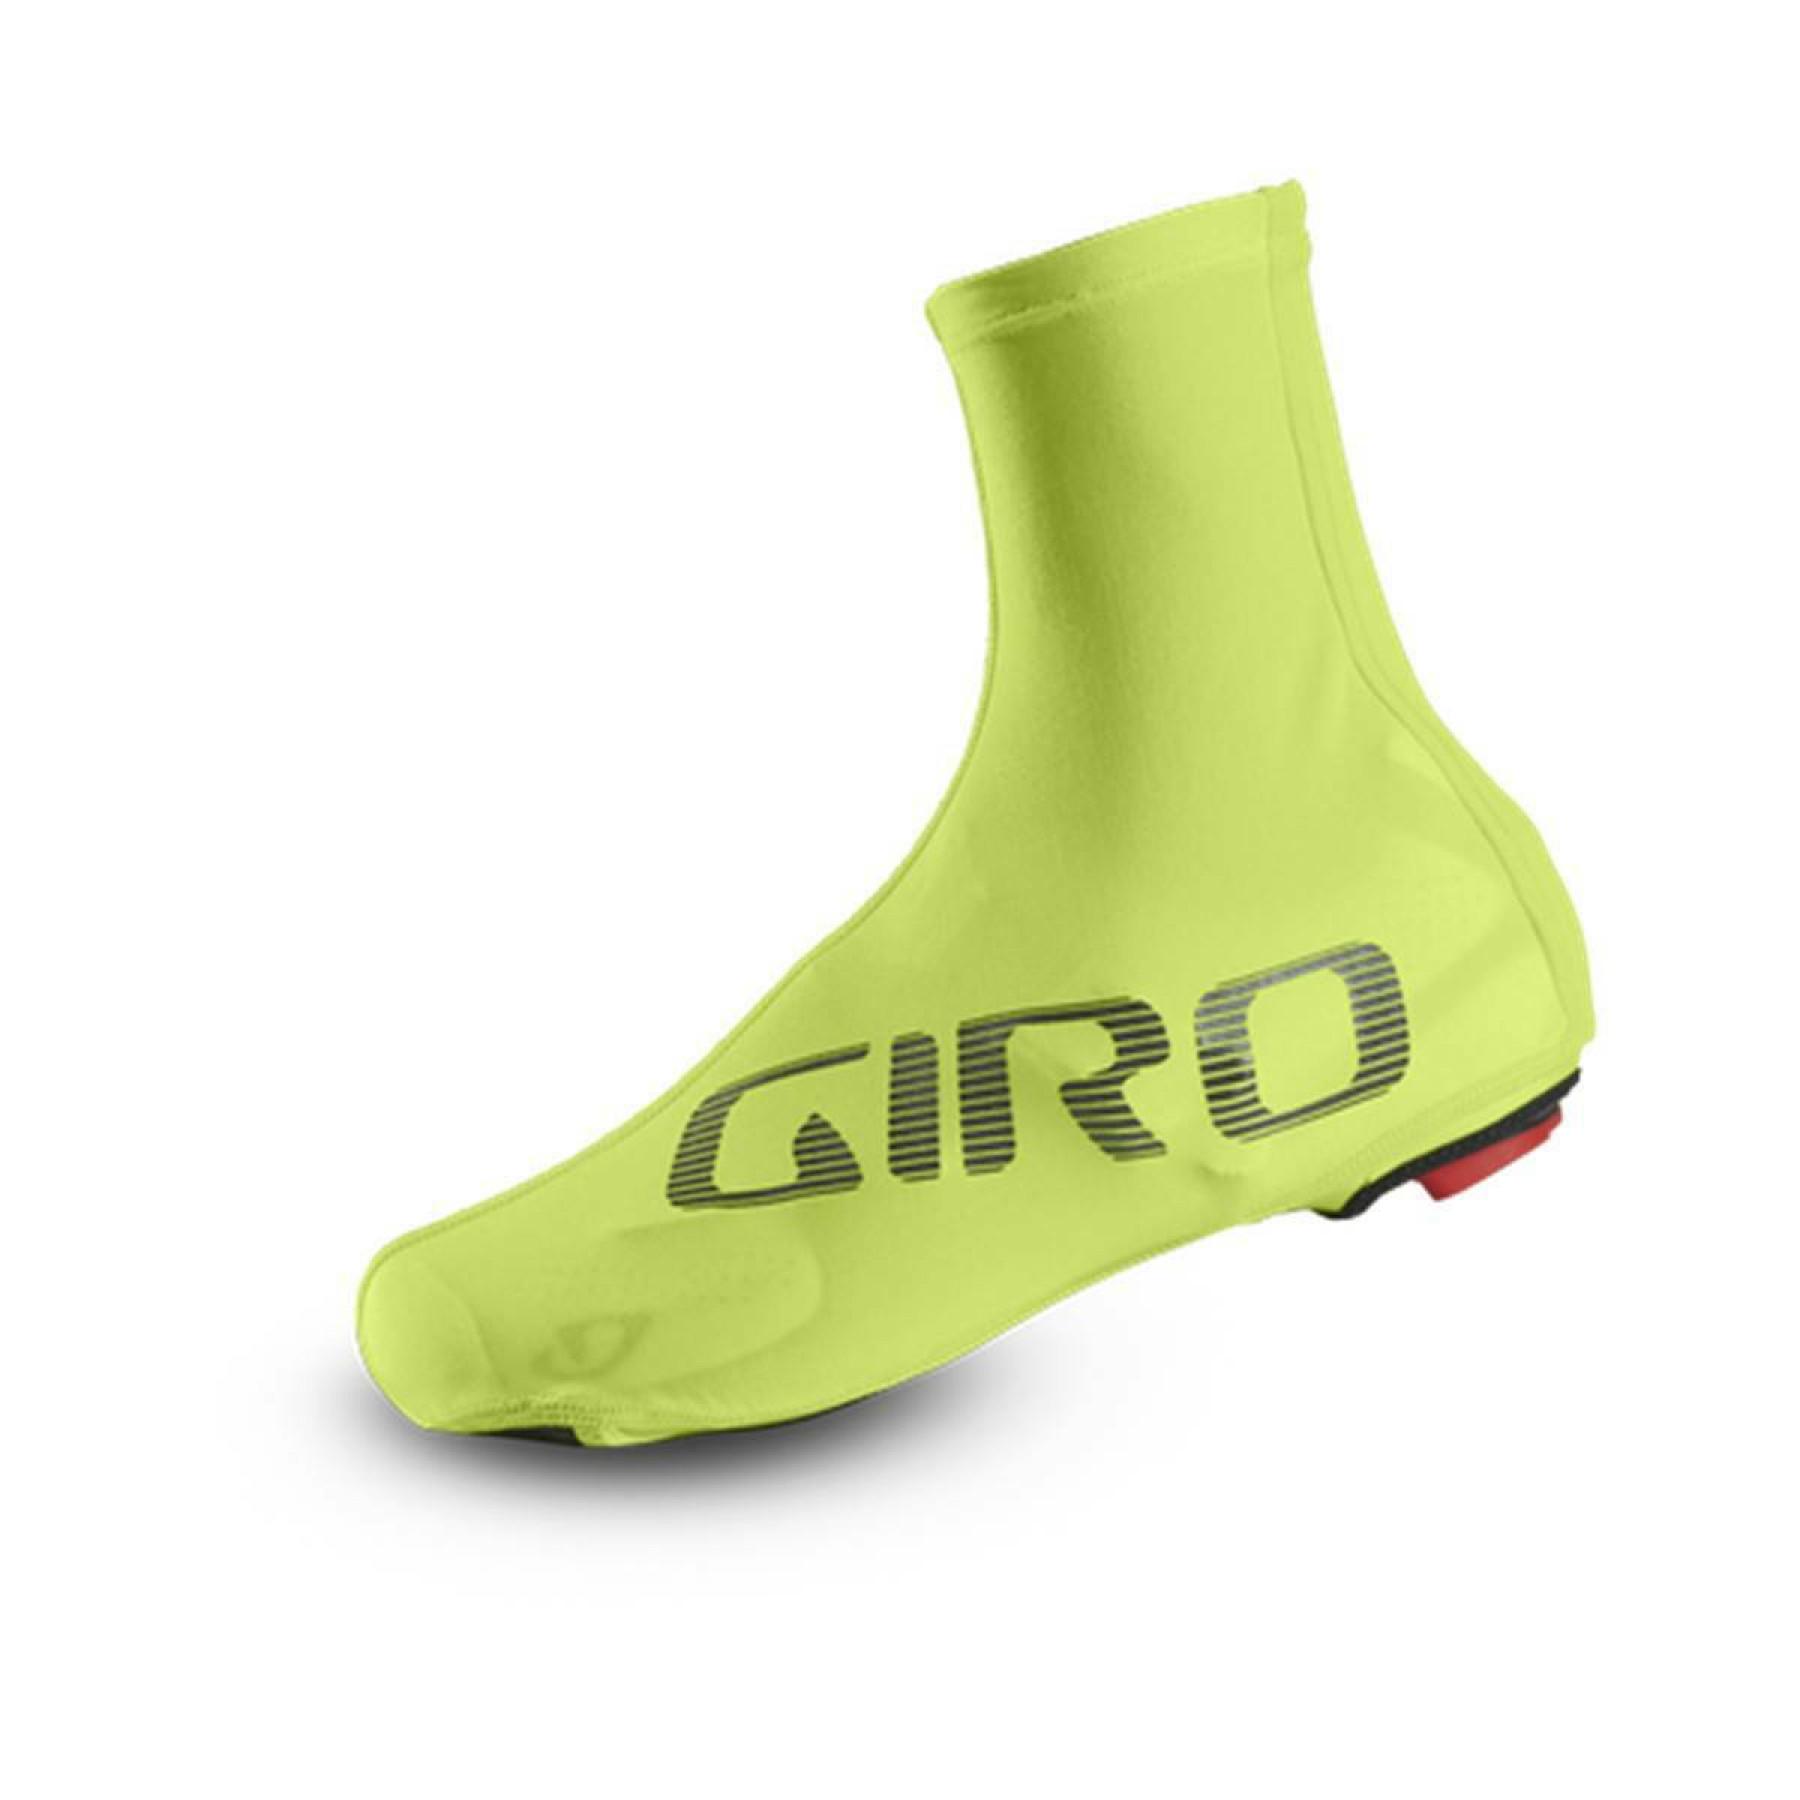 Couvre-chaussures Giro Ultralight Aero